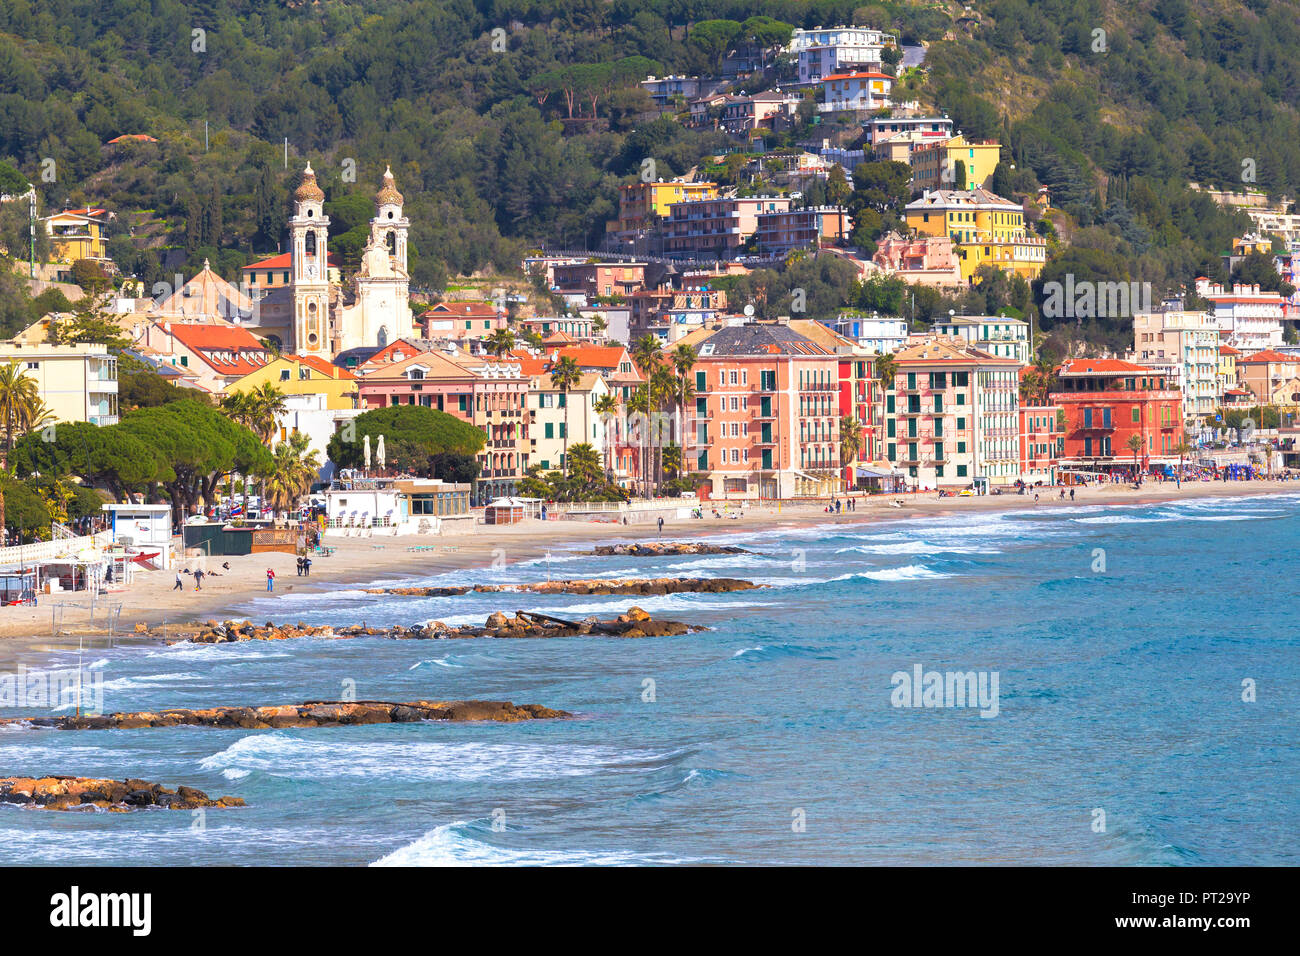 Villaggio e Spiaggia di Laigueglia, Provincia di Savona Liguria, Italia, Europa Foto Stock